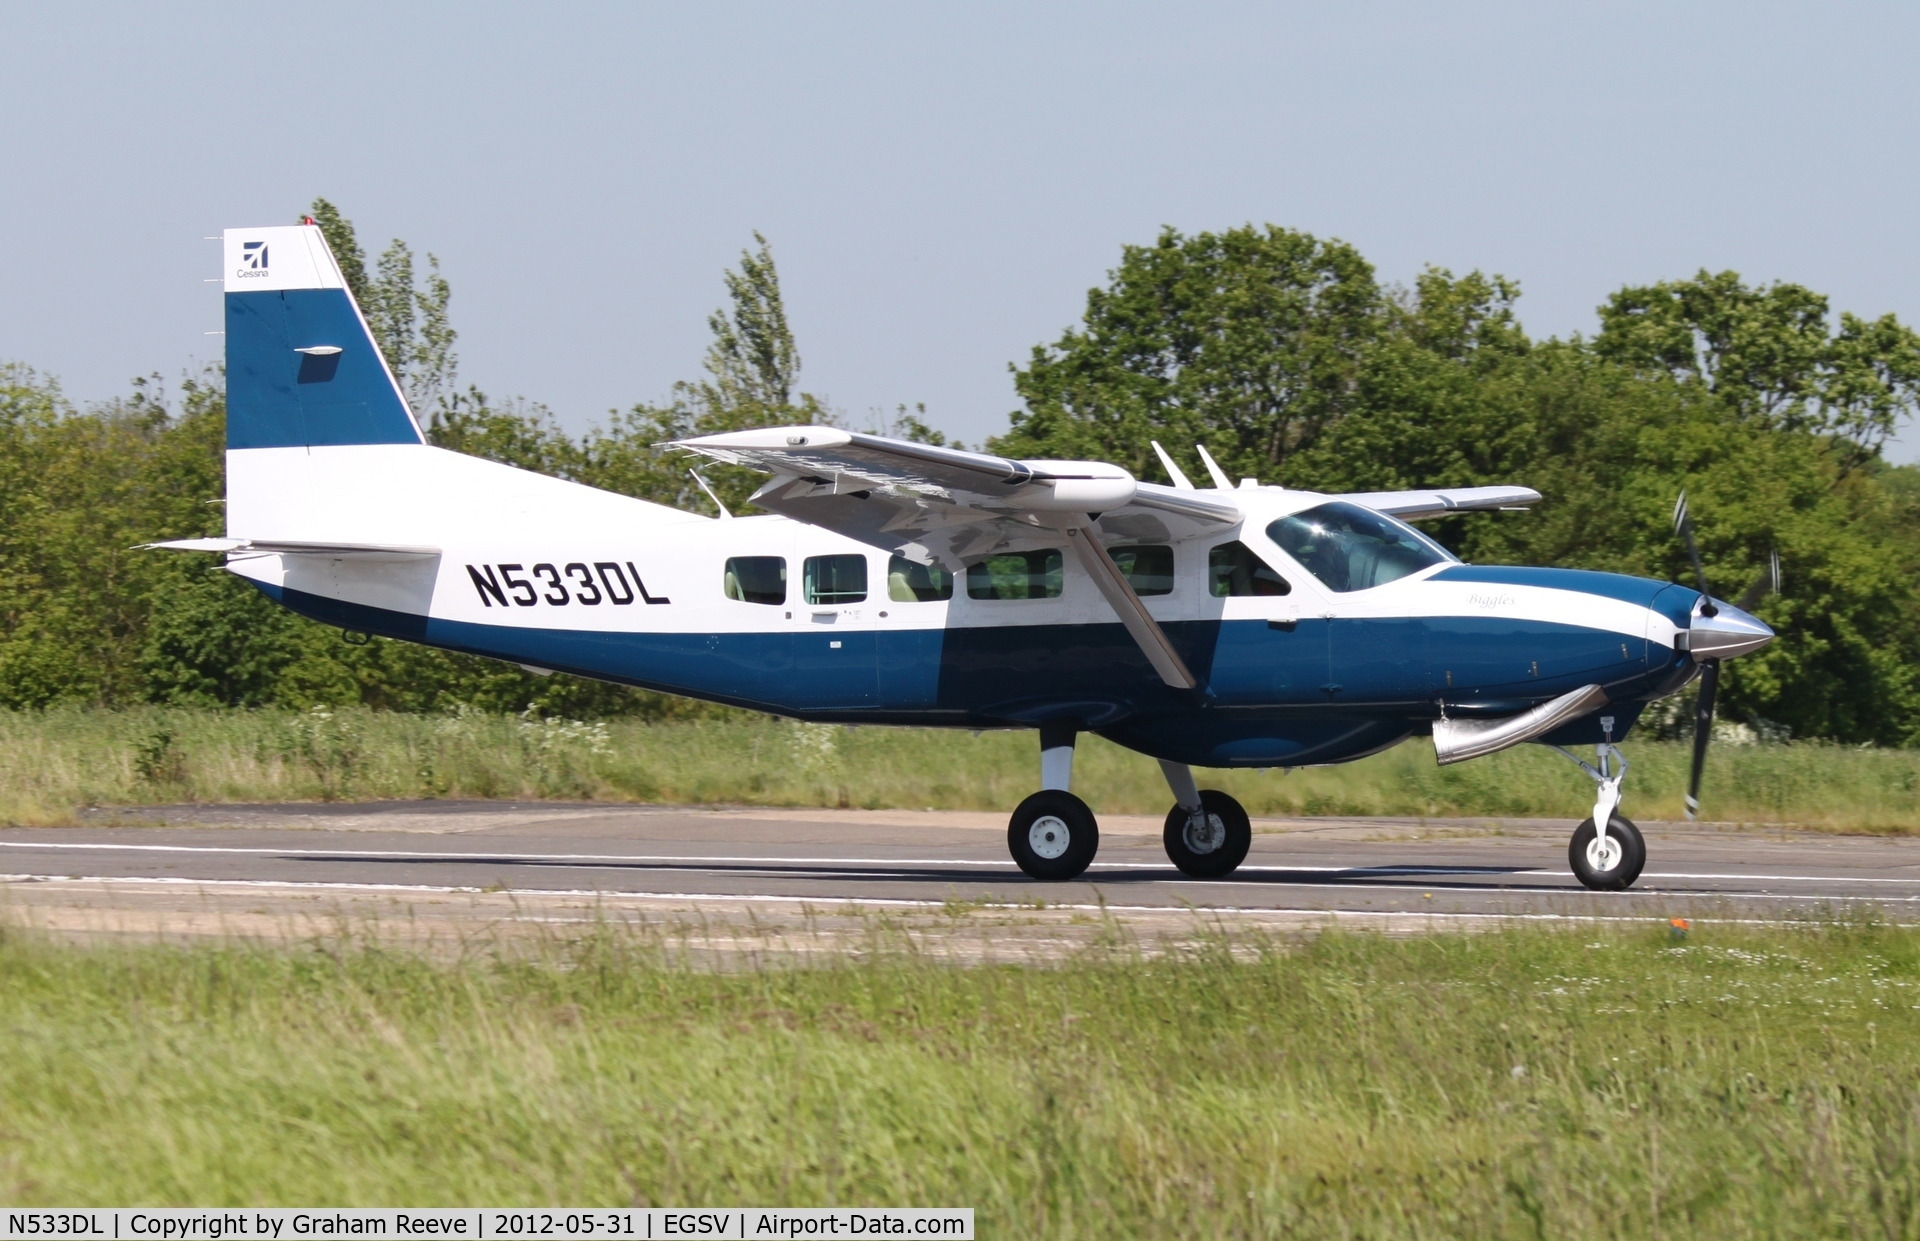 N533DL, 2011 Cessna 208B Grand Caravan C/N 20800533, Just landed.